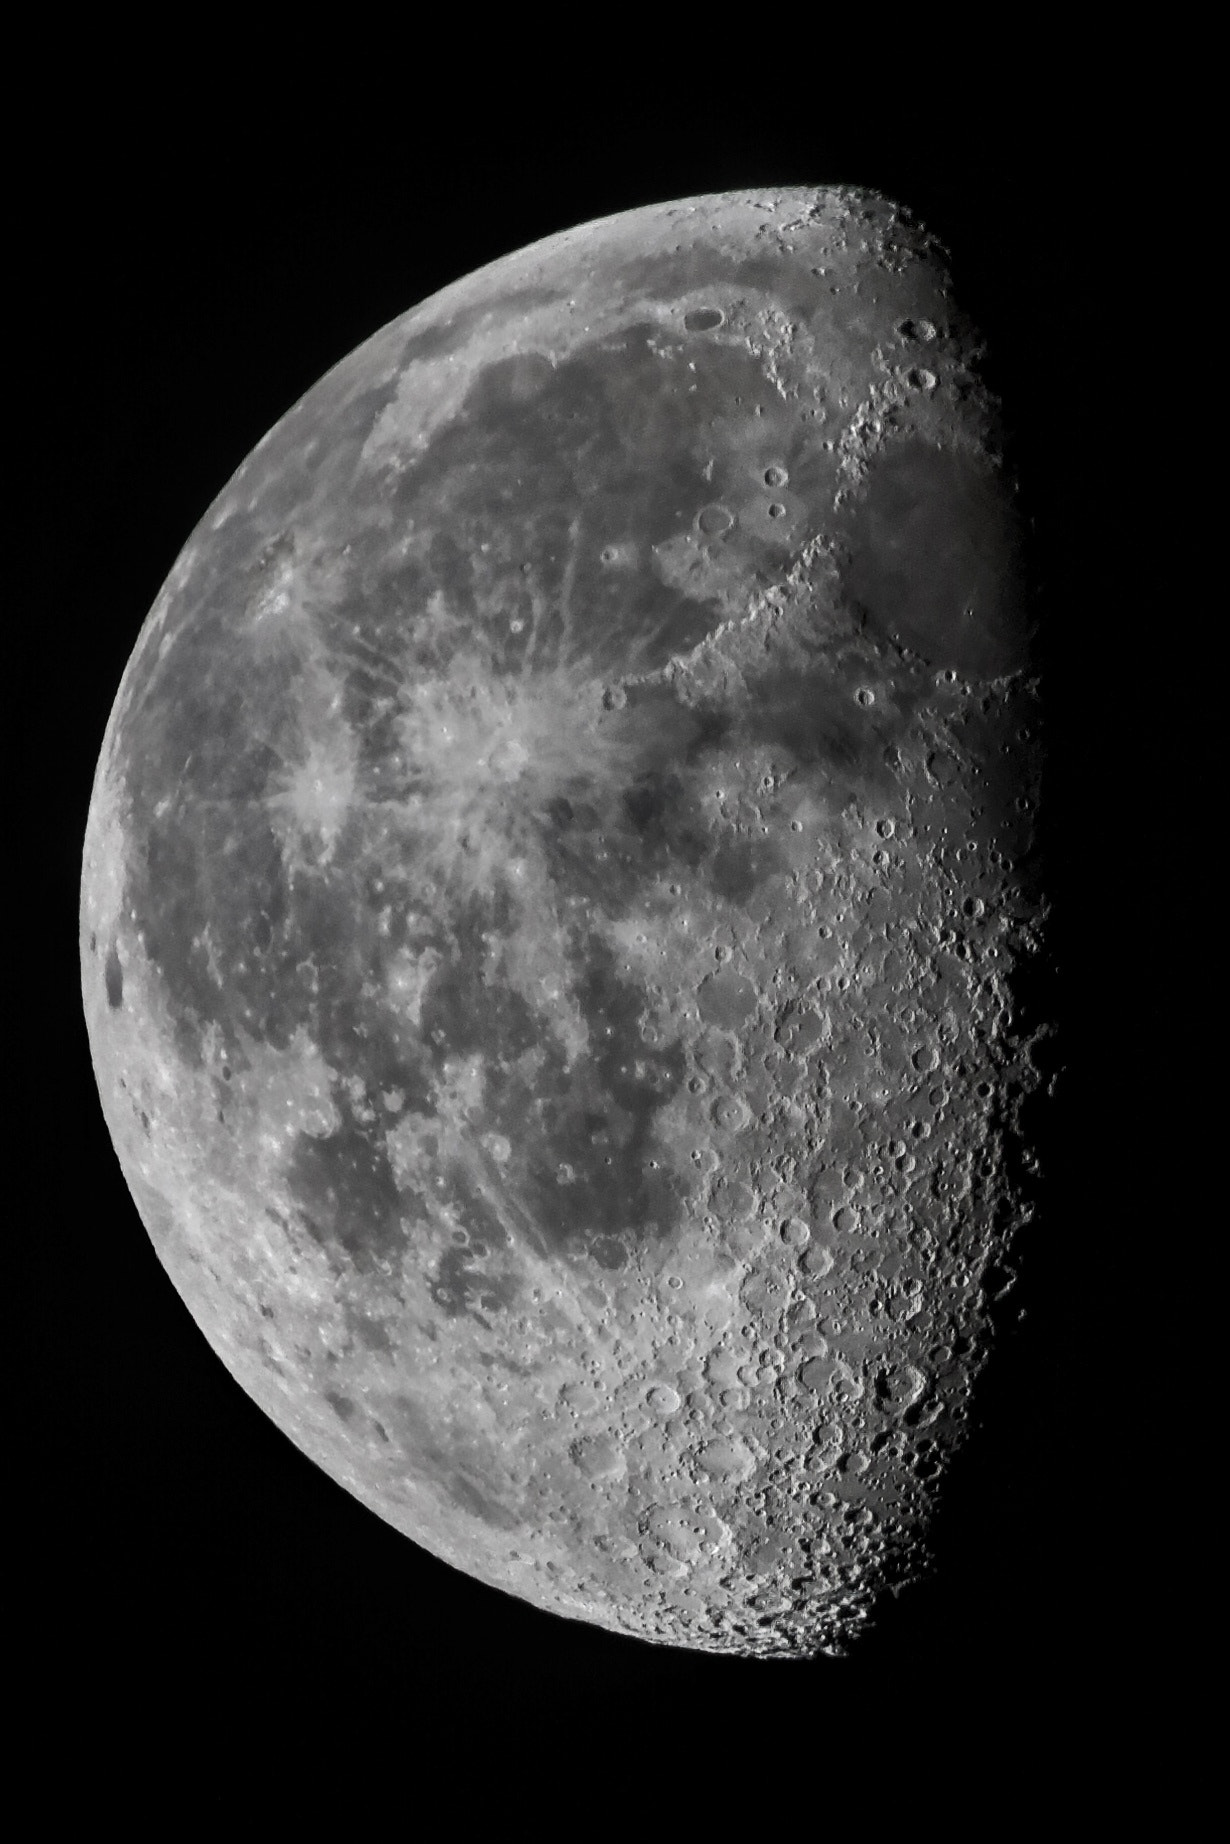 Canon EOS 7D sample photo. Moon photography